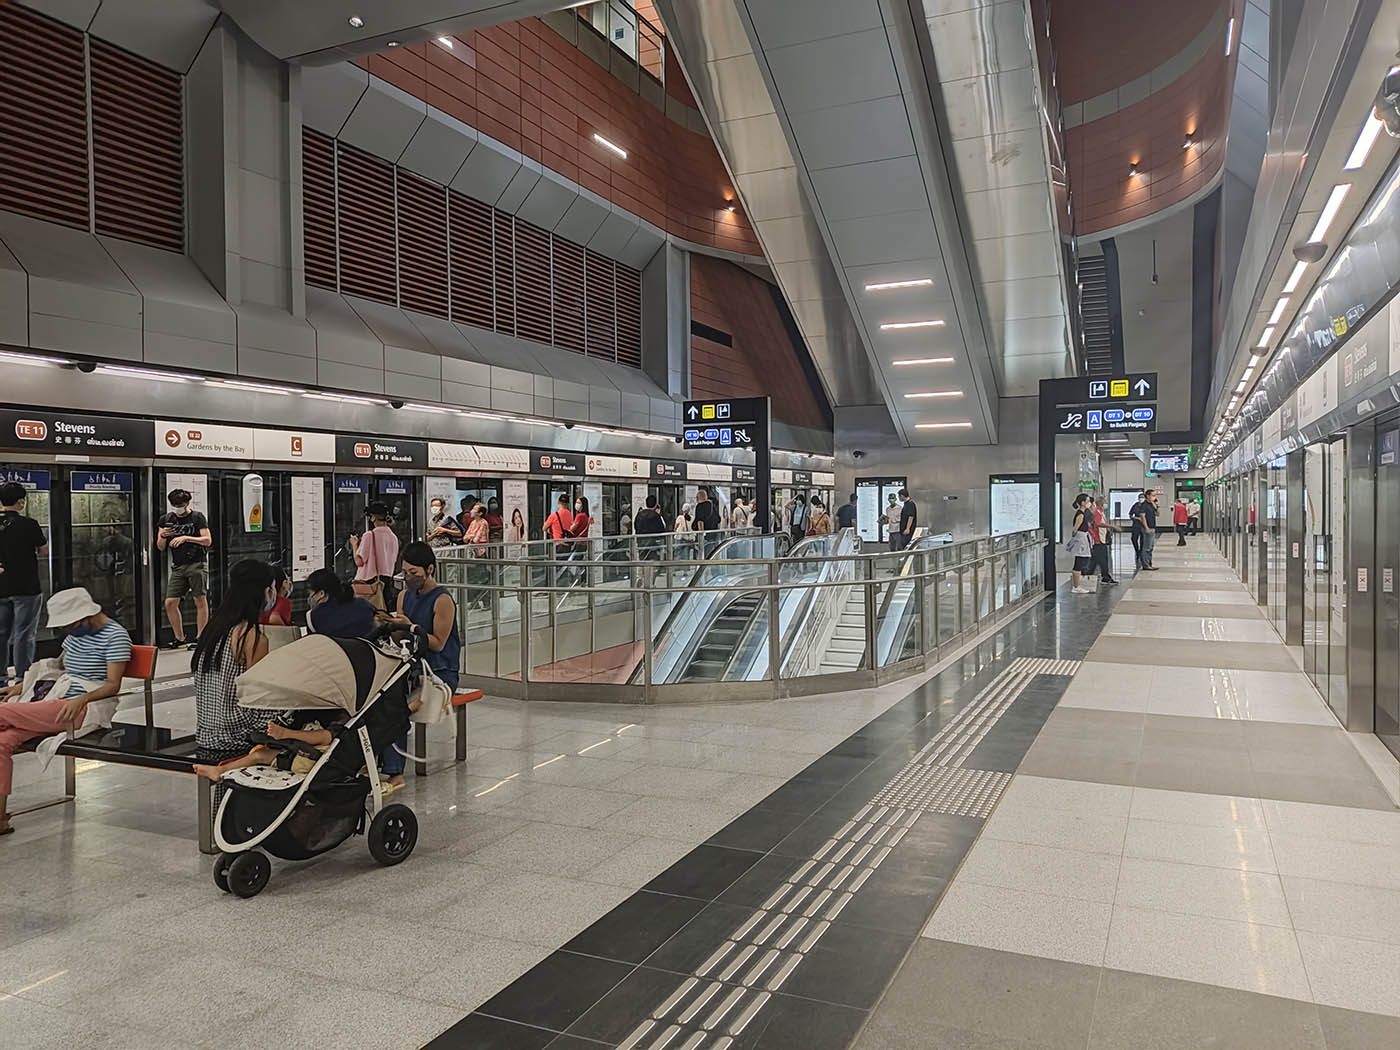 Stevens MRT Station - - TE11 Platforms